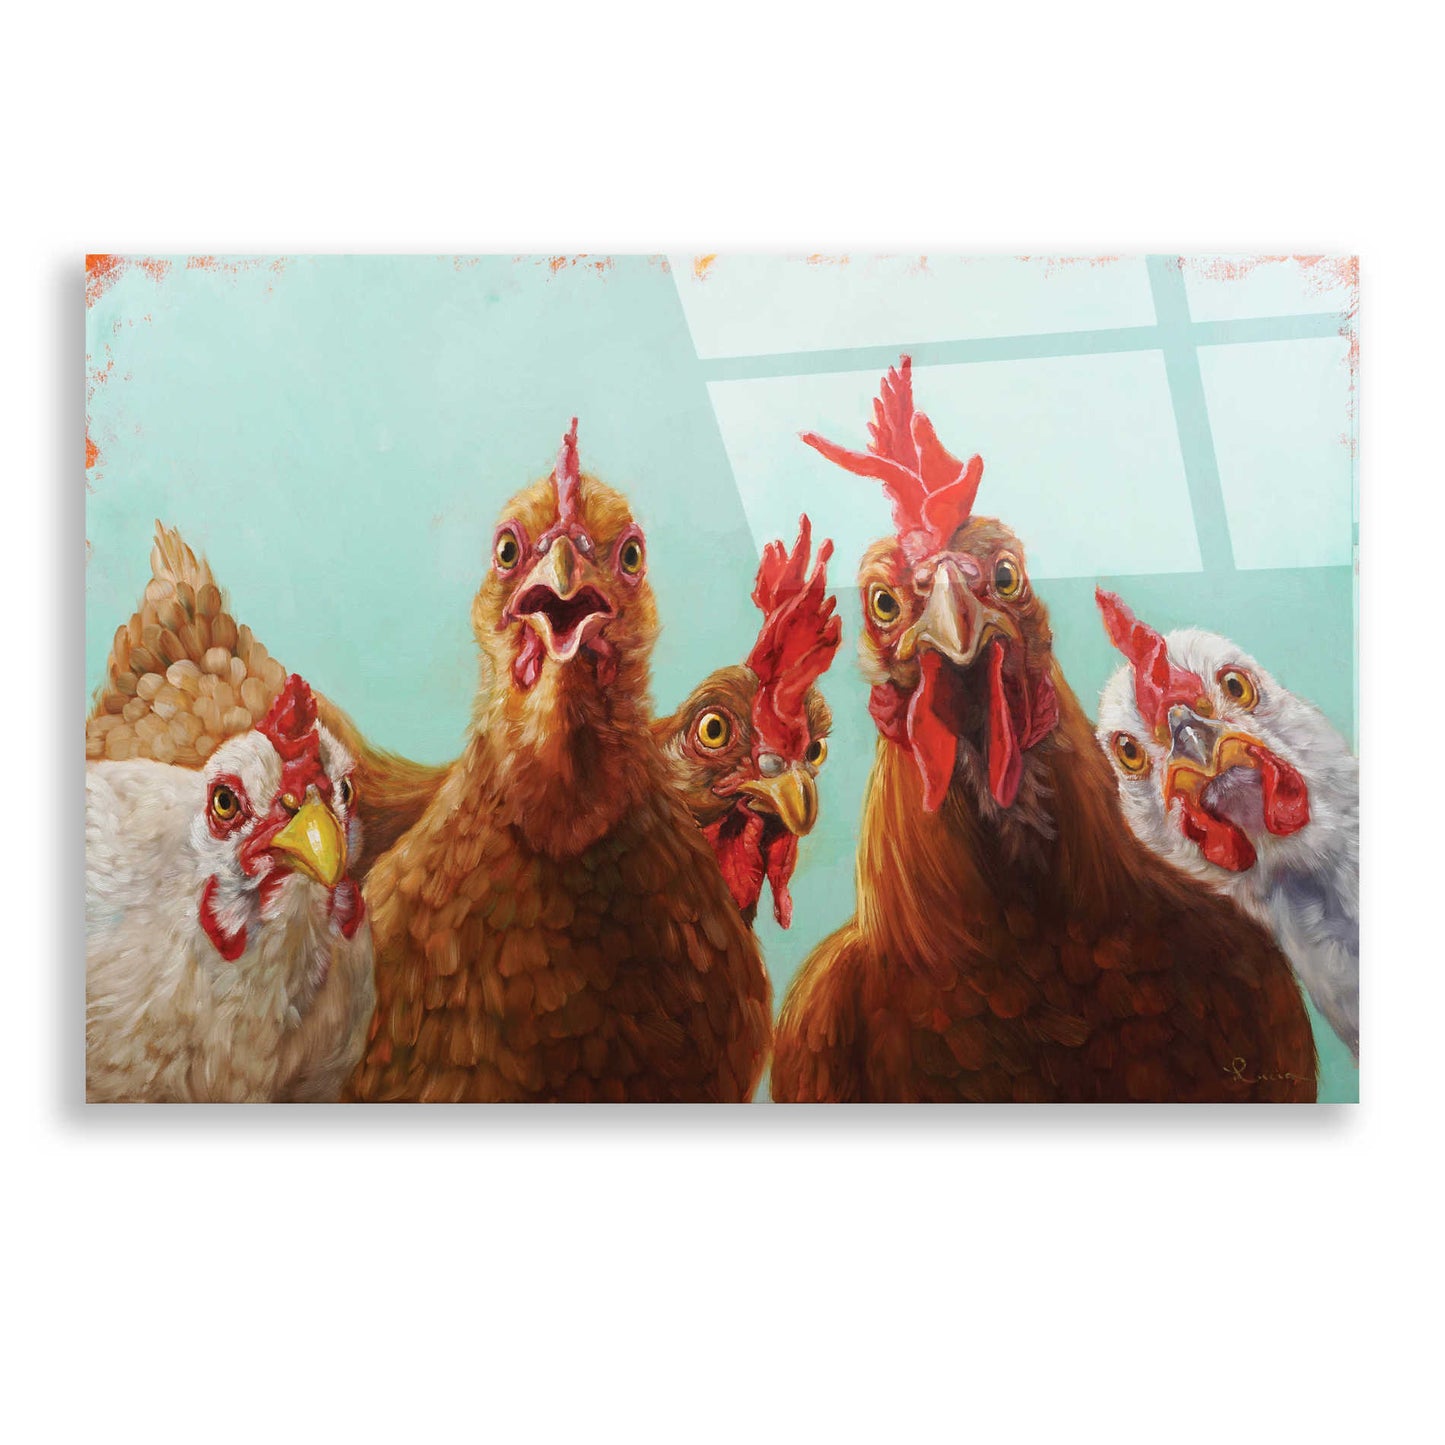 Epic Art 'Chicken for Dinner' by Lucia Heffernan, Acrylic Glass Wall Art,24x16